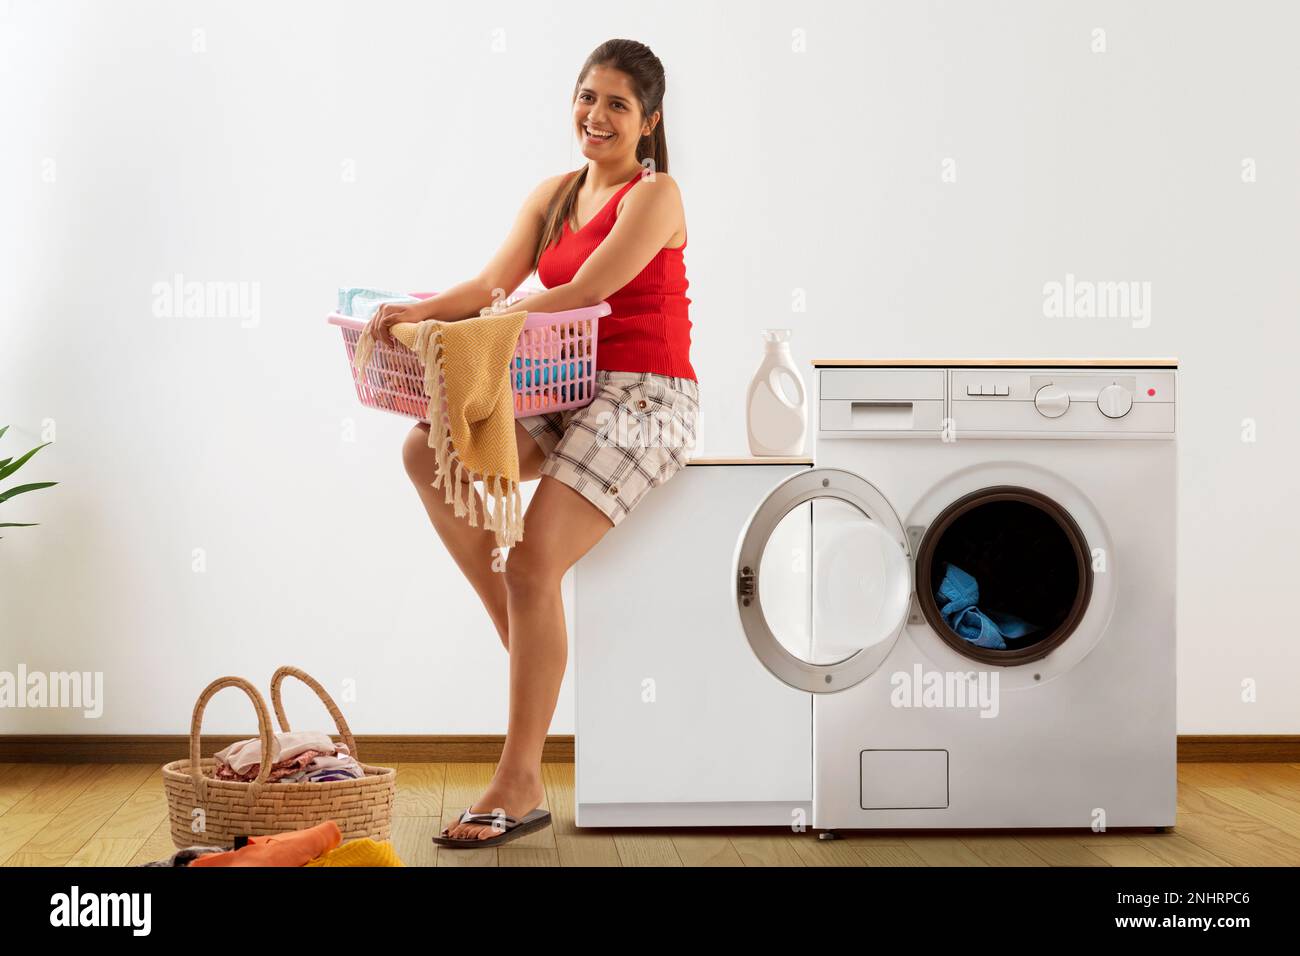 Junge Frau, die neben der Waschmaschine sitzt, mit Wäschekorb Stockfoto